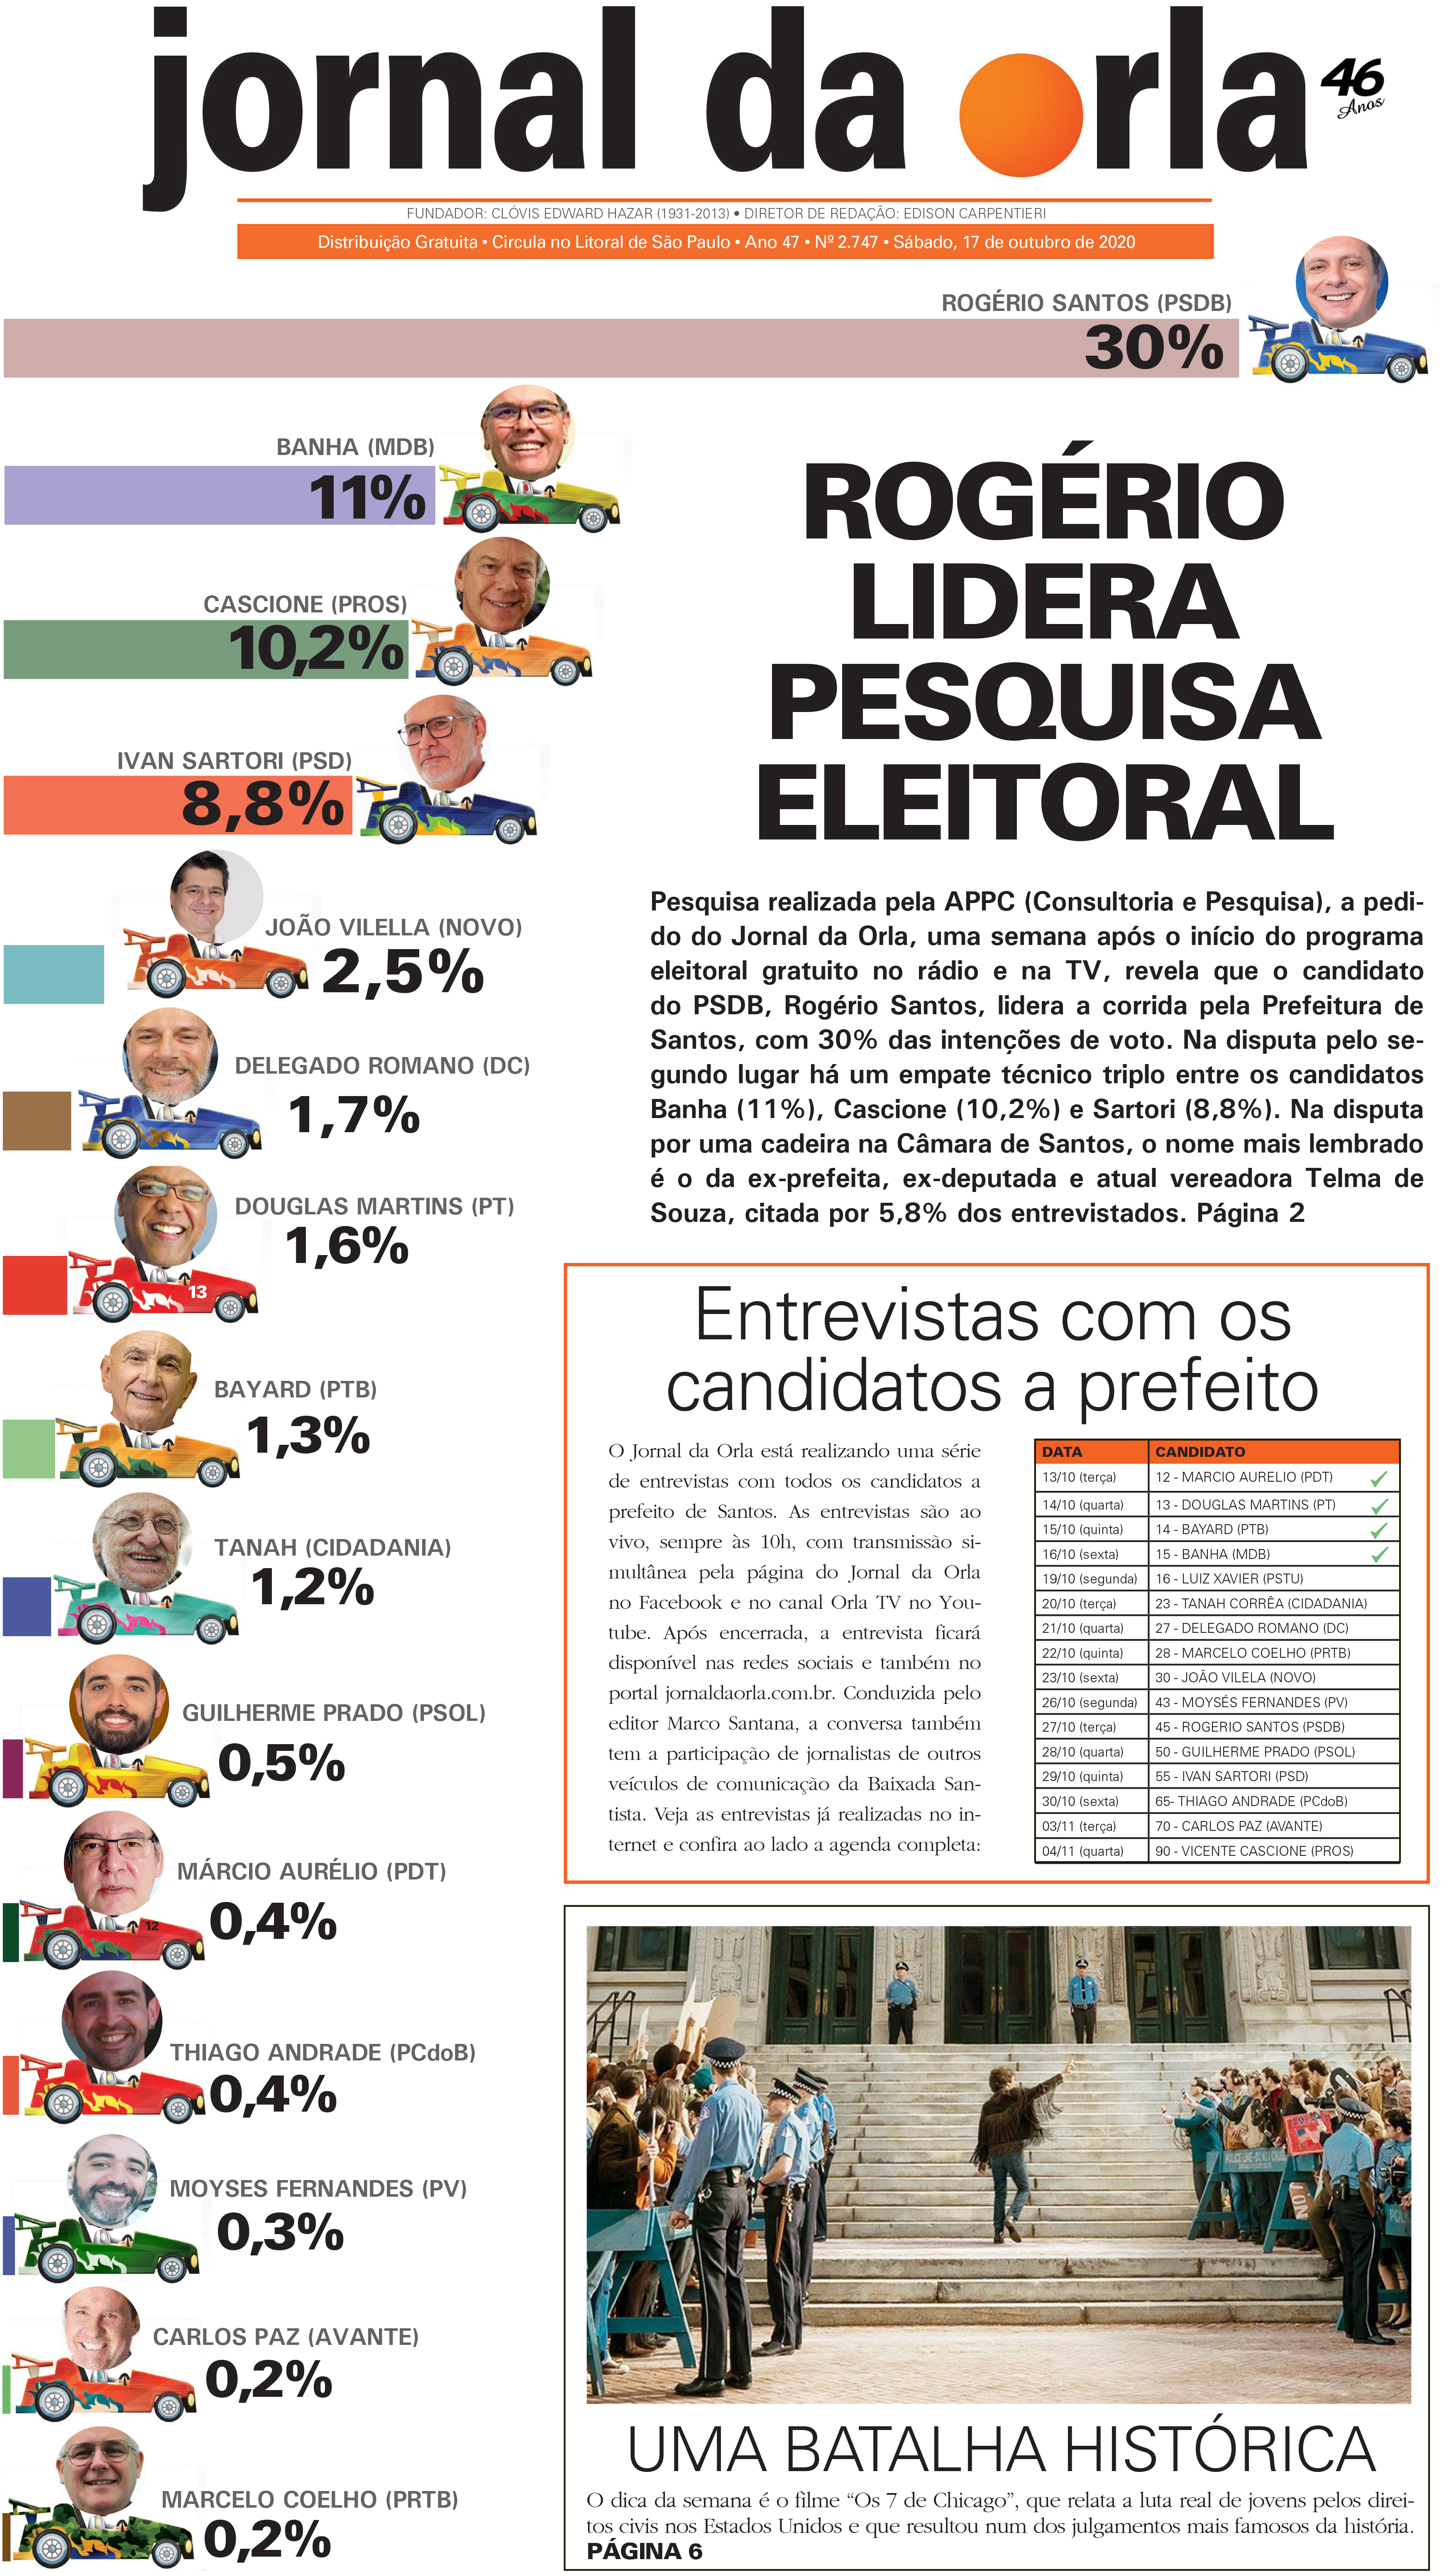 17/10/2020 | Jornal da Orla